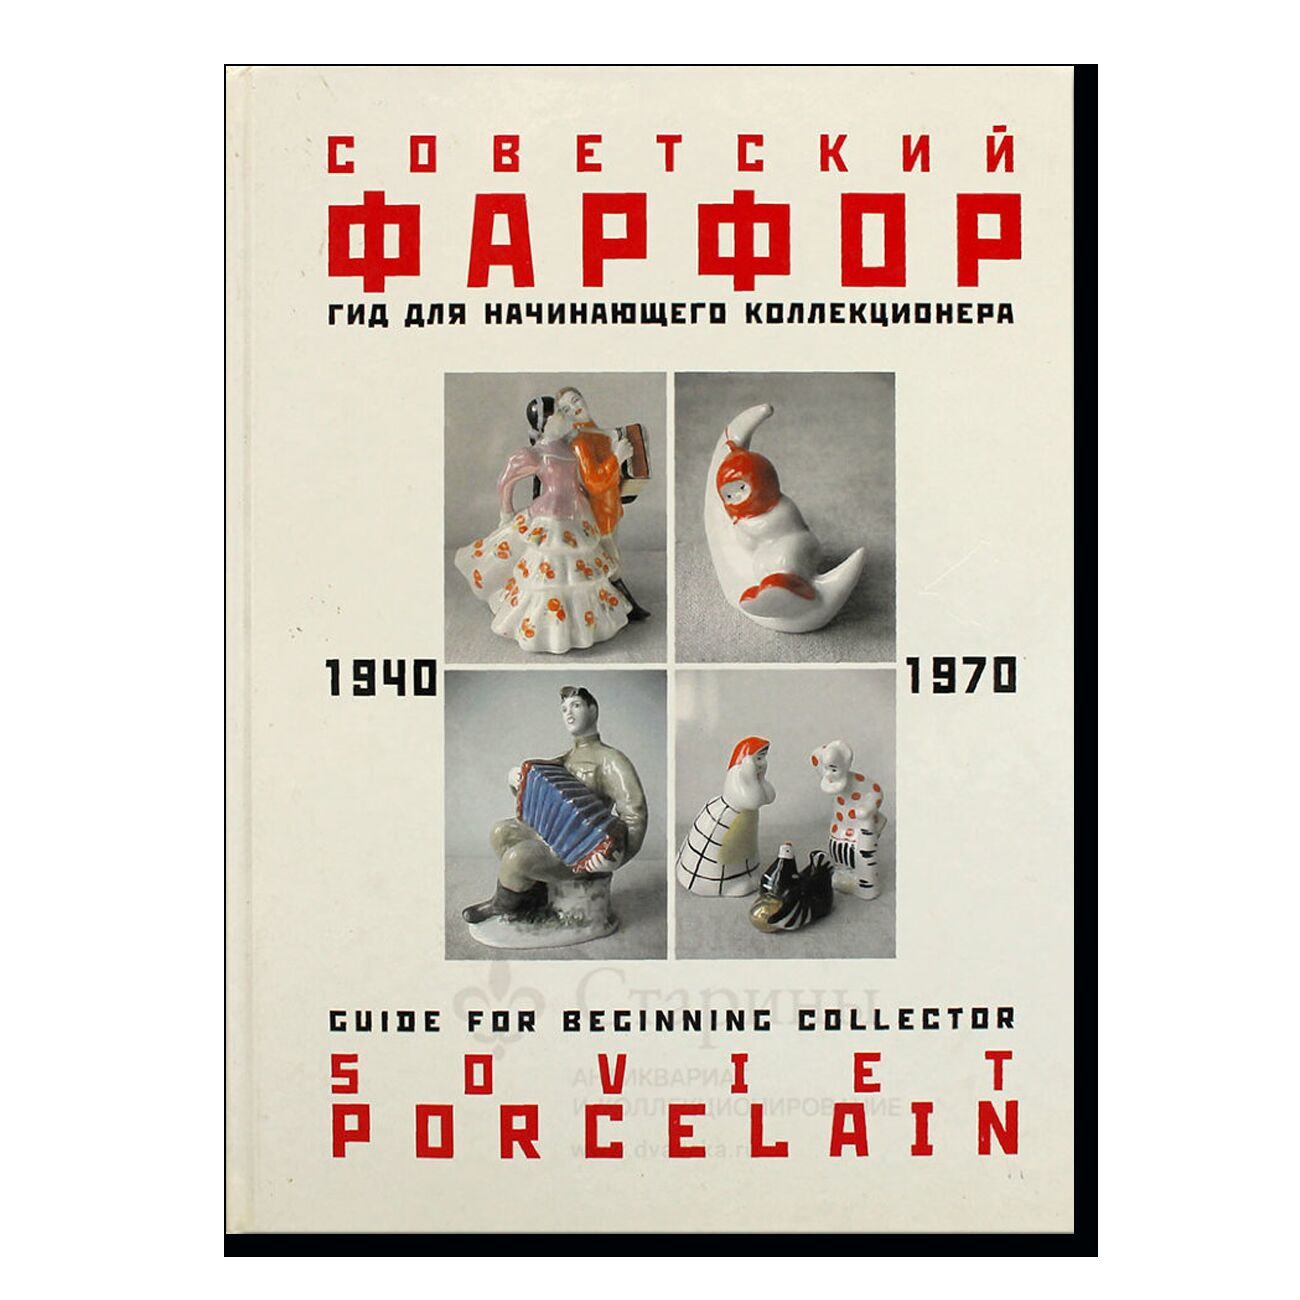 Советский фарфор 1940-1970. Гид для начинающего коллекционера